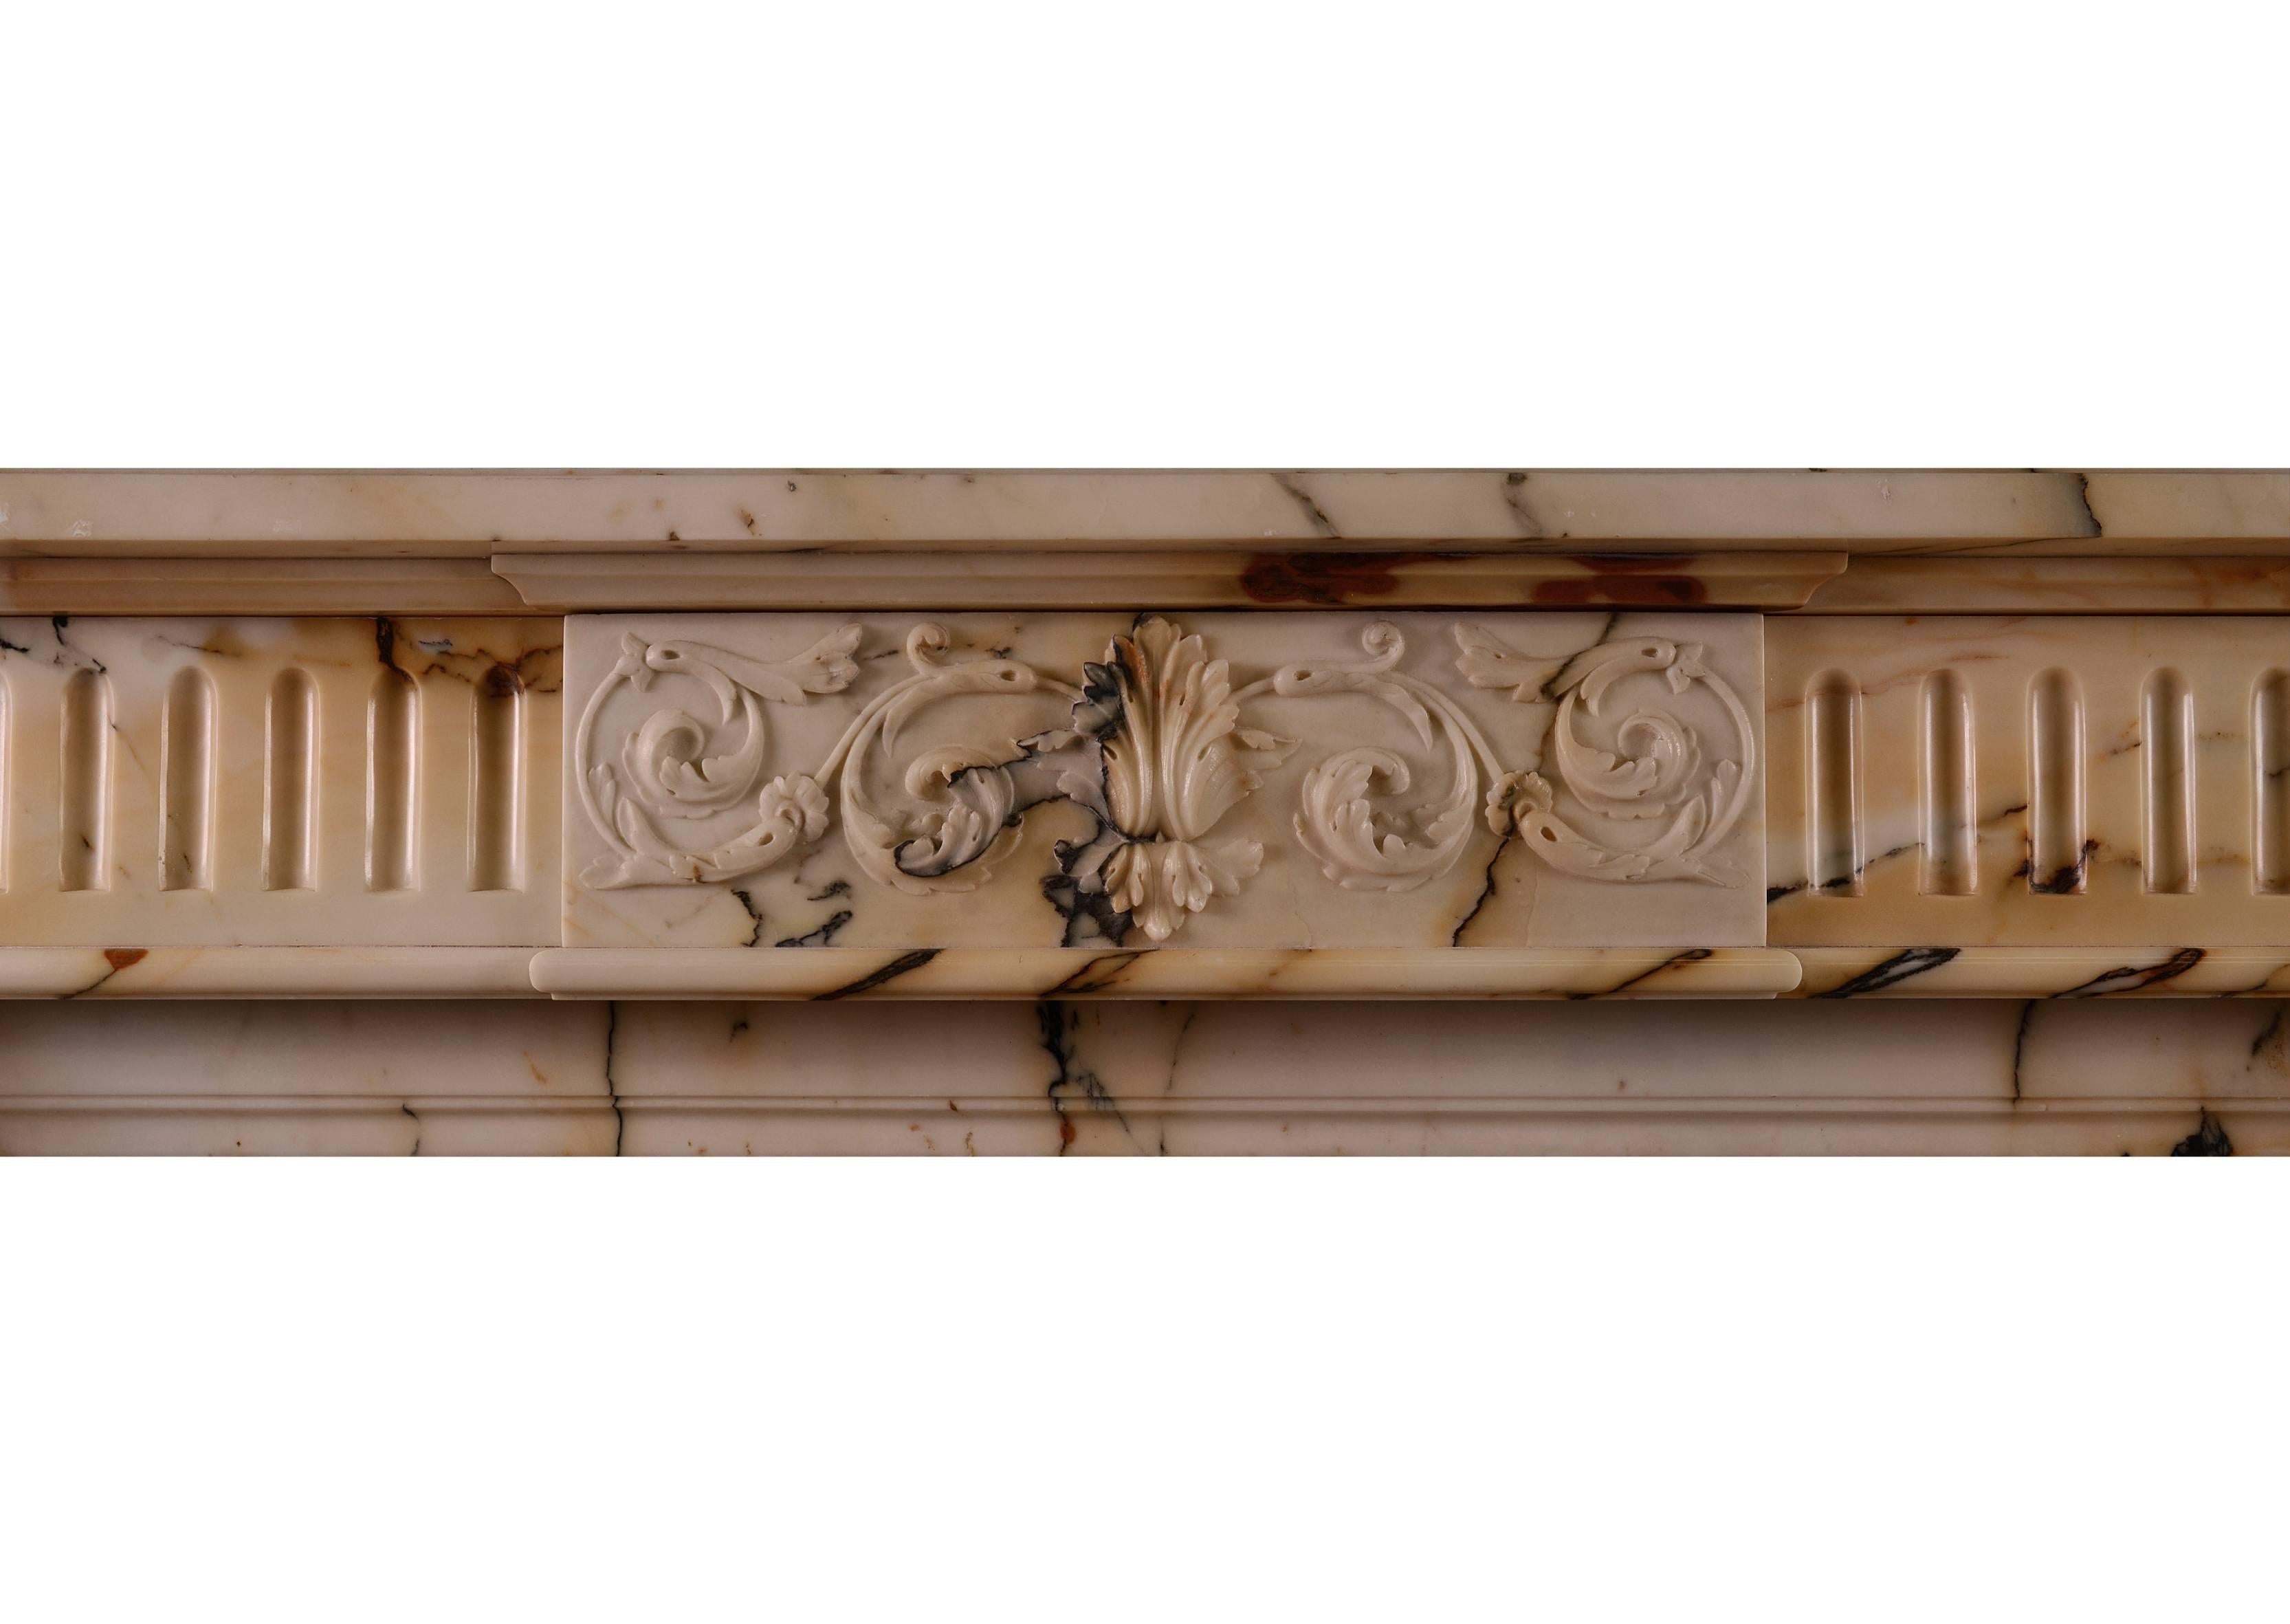 Ein antiker Kamin im Stil Louis XVI aus italienischem Pavonazzo-Marmor von guter Qualität. Die kannelierten Pfosten werden von geschnitzten Tafeln mit Blumen und gebundenen Bändern gekrönt. Der Fries geschnitzt Mittelplatte mit gerollten Blattwerk